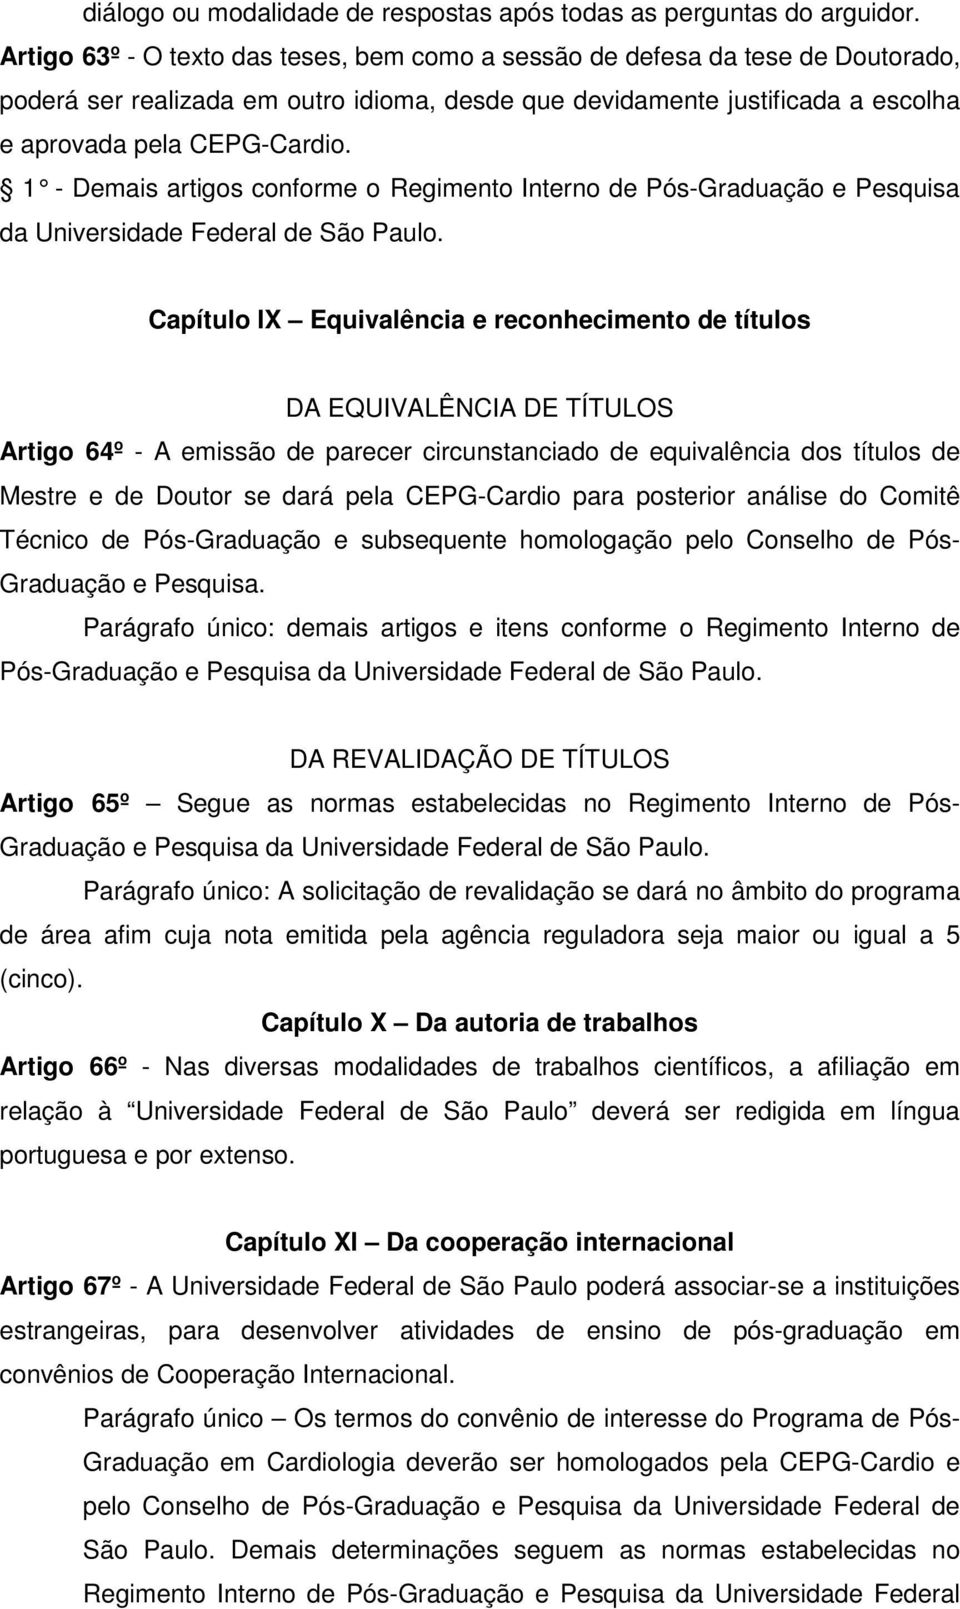 1 - Demais artigos conforme o Regimento Interno de Pós-Graduação e Pesquisa da Universidade Federal de São Paulo.